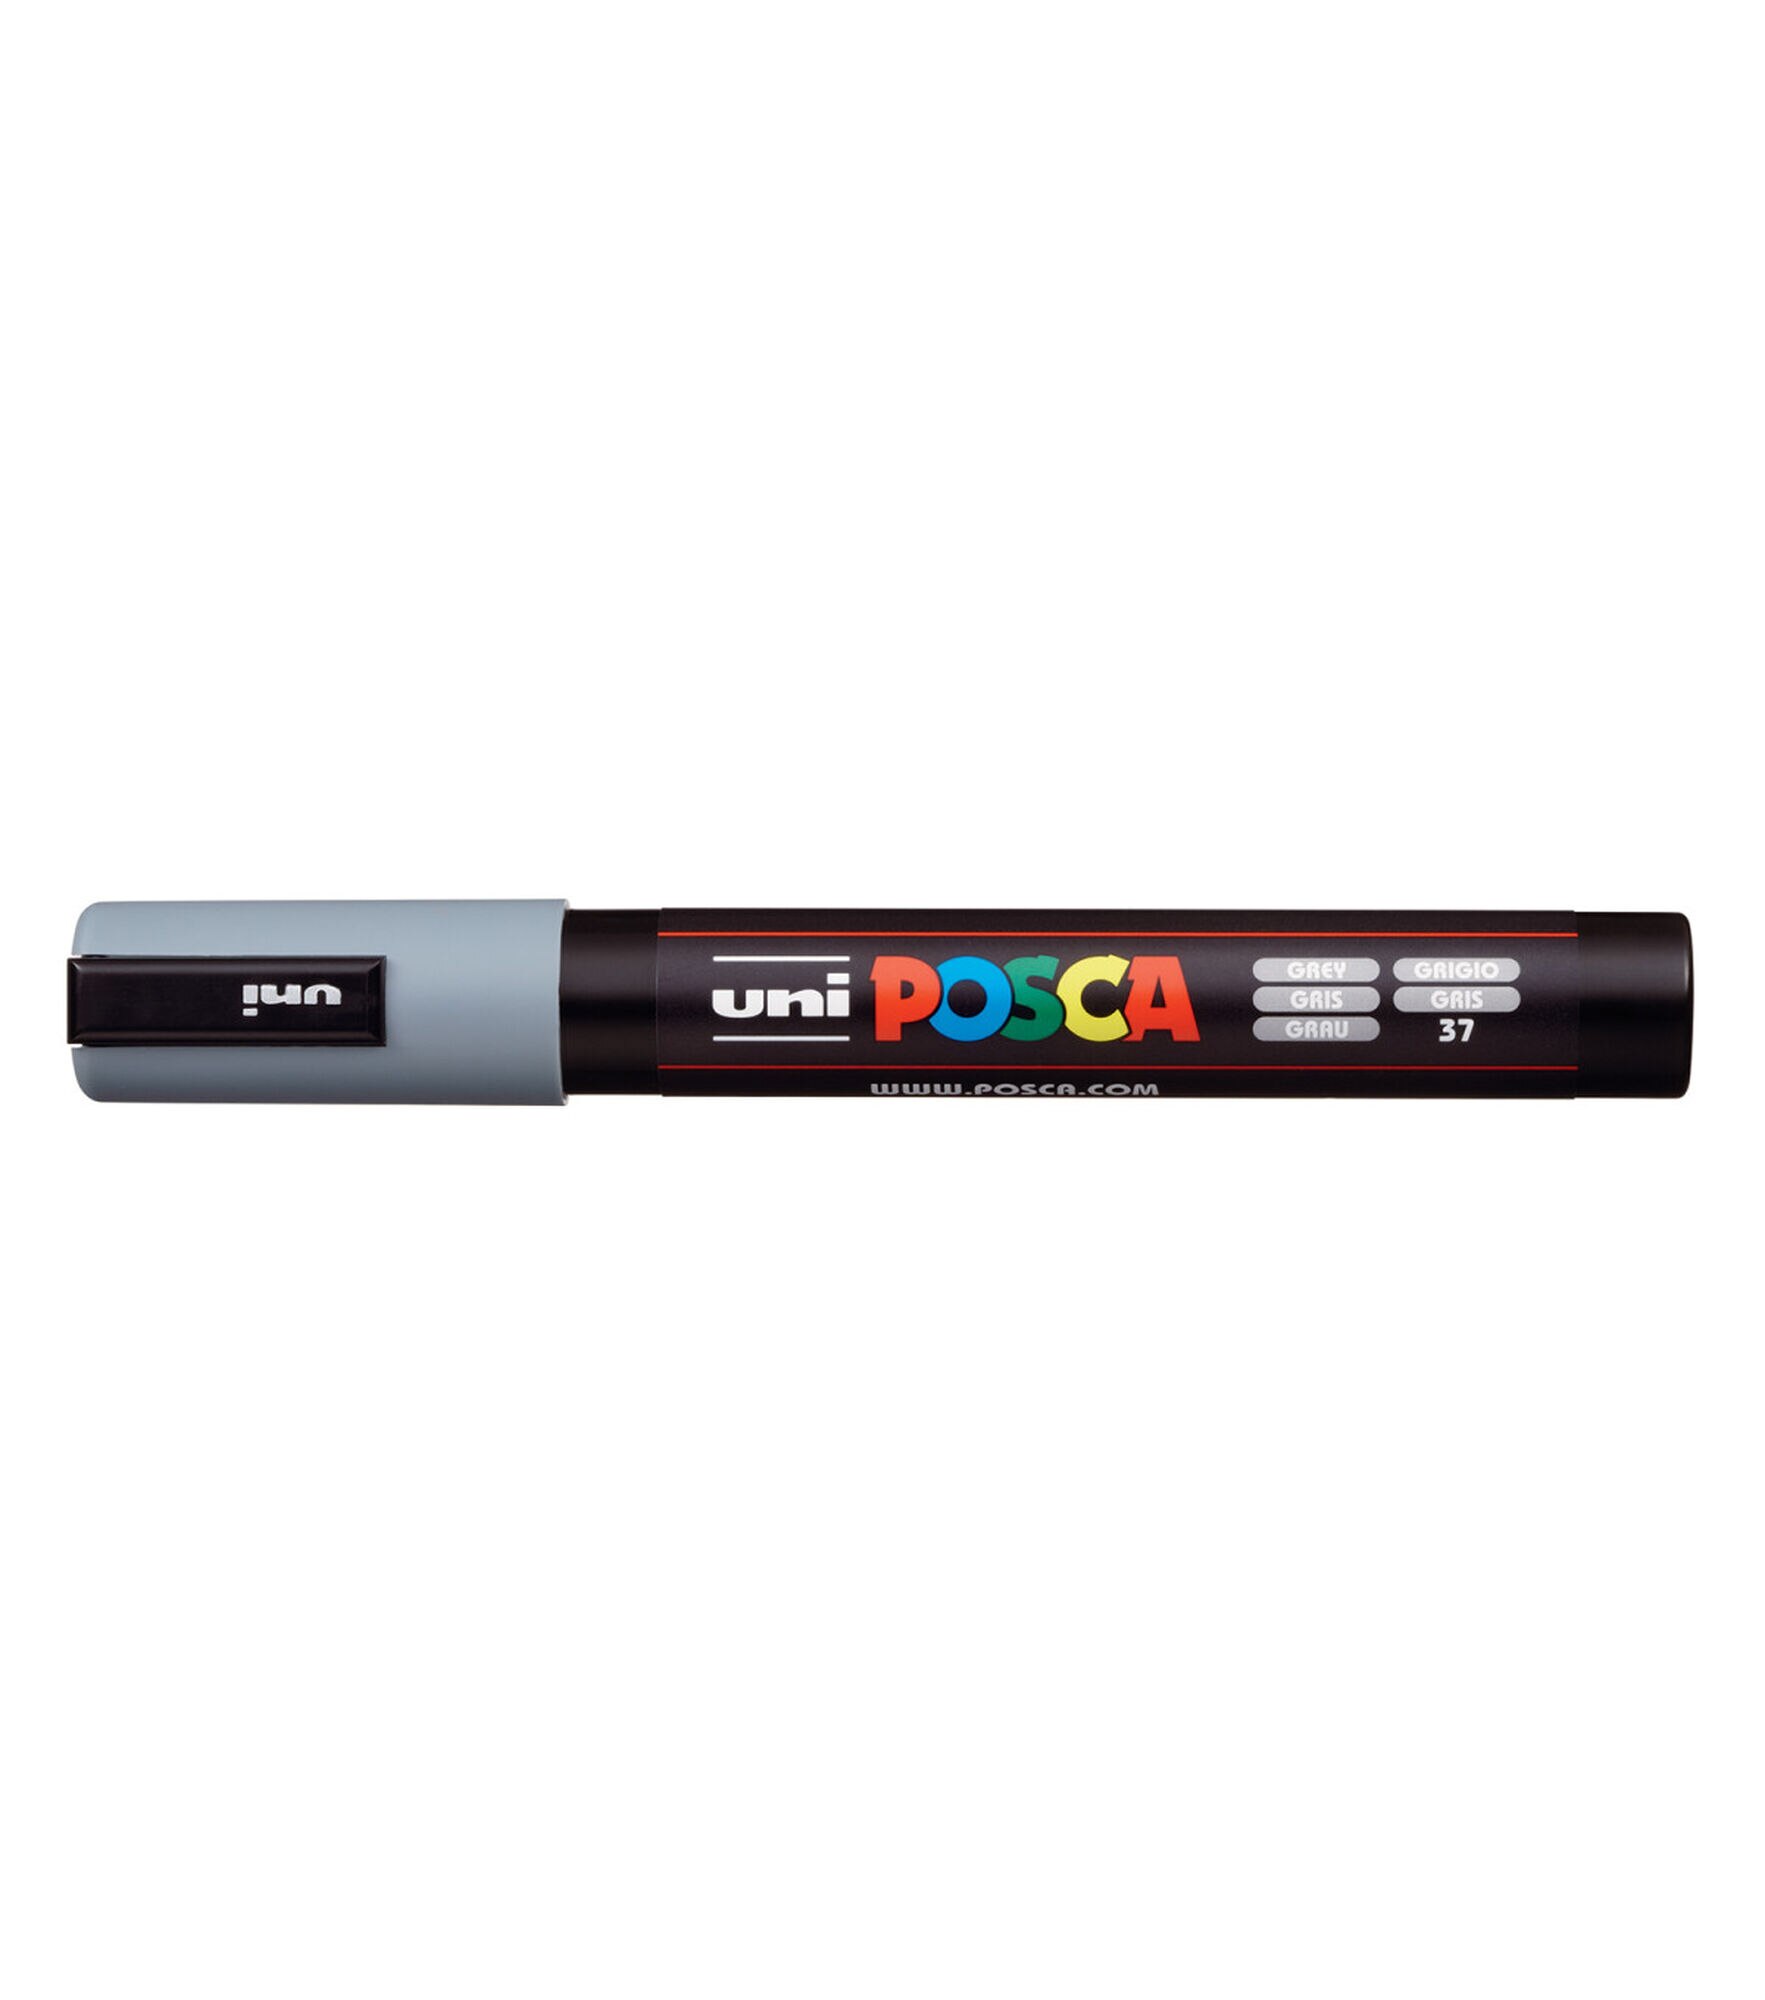 Uni POSCA Paint Markers, Fine Tip (PC-3M), Set of 16 – St. Louis